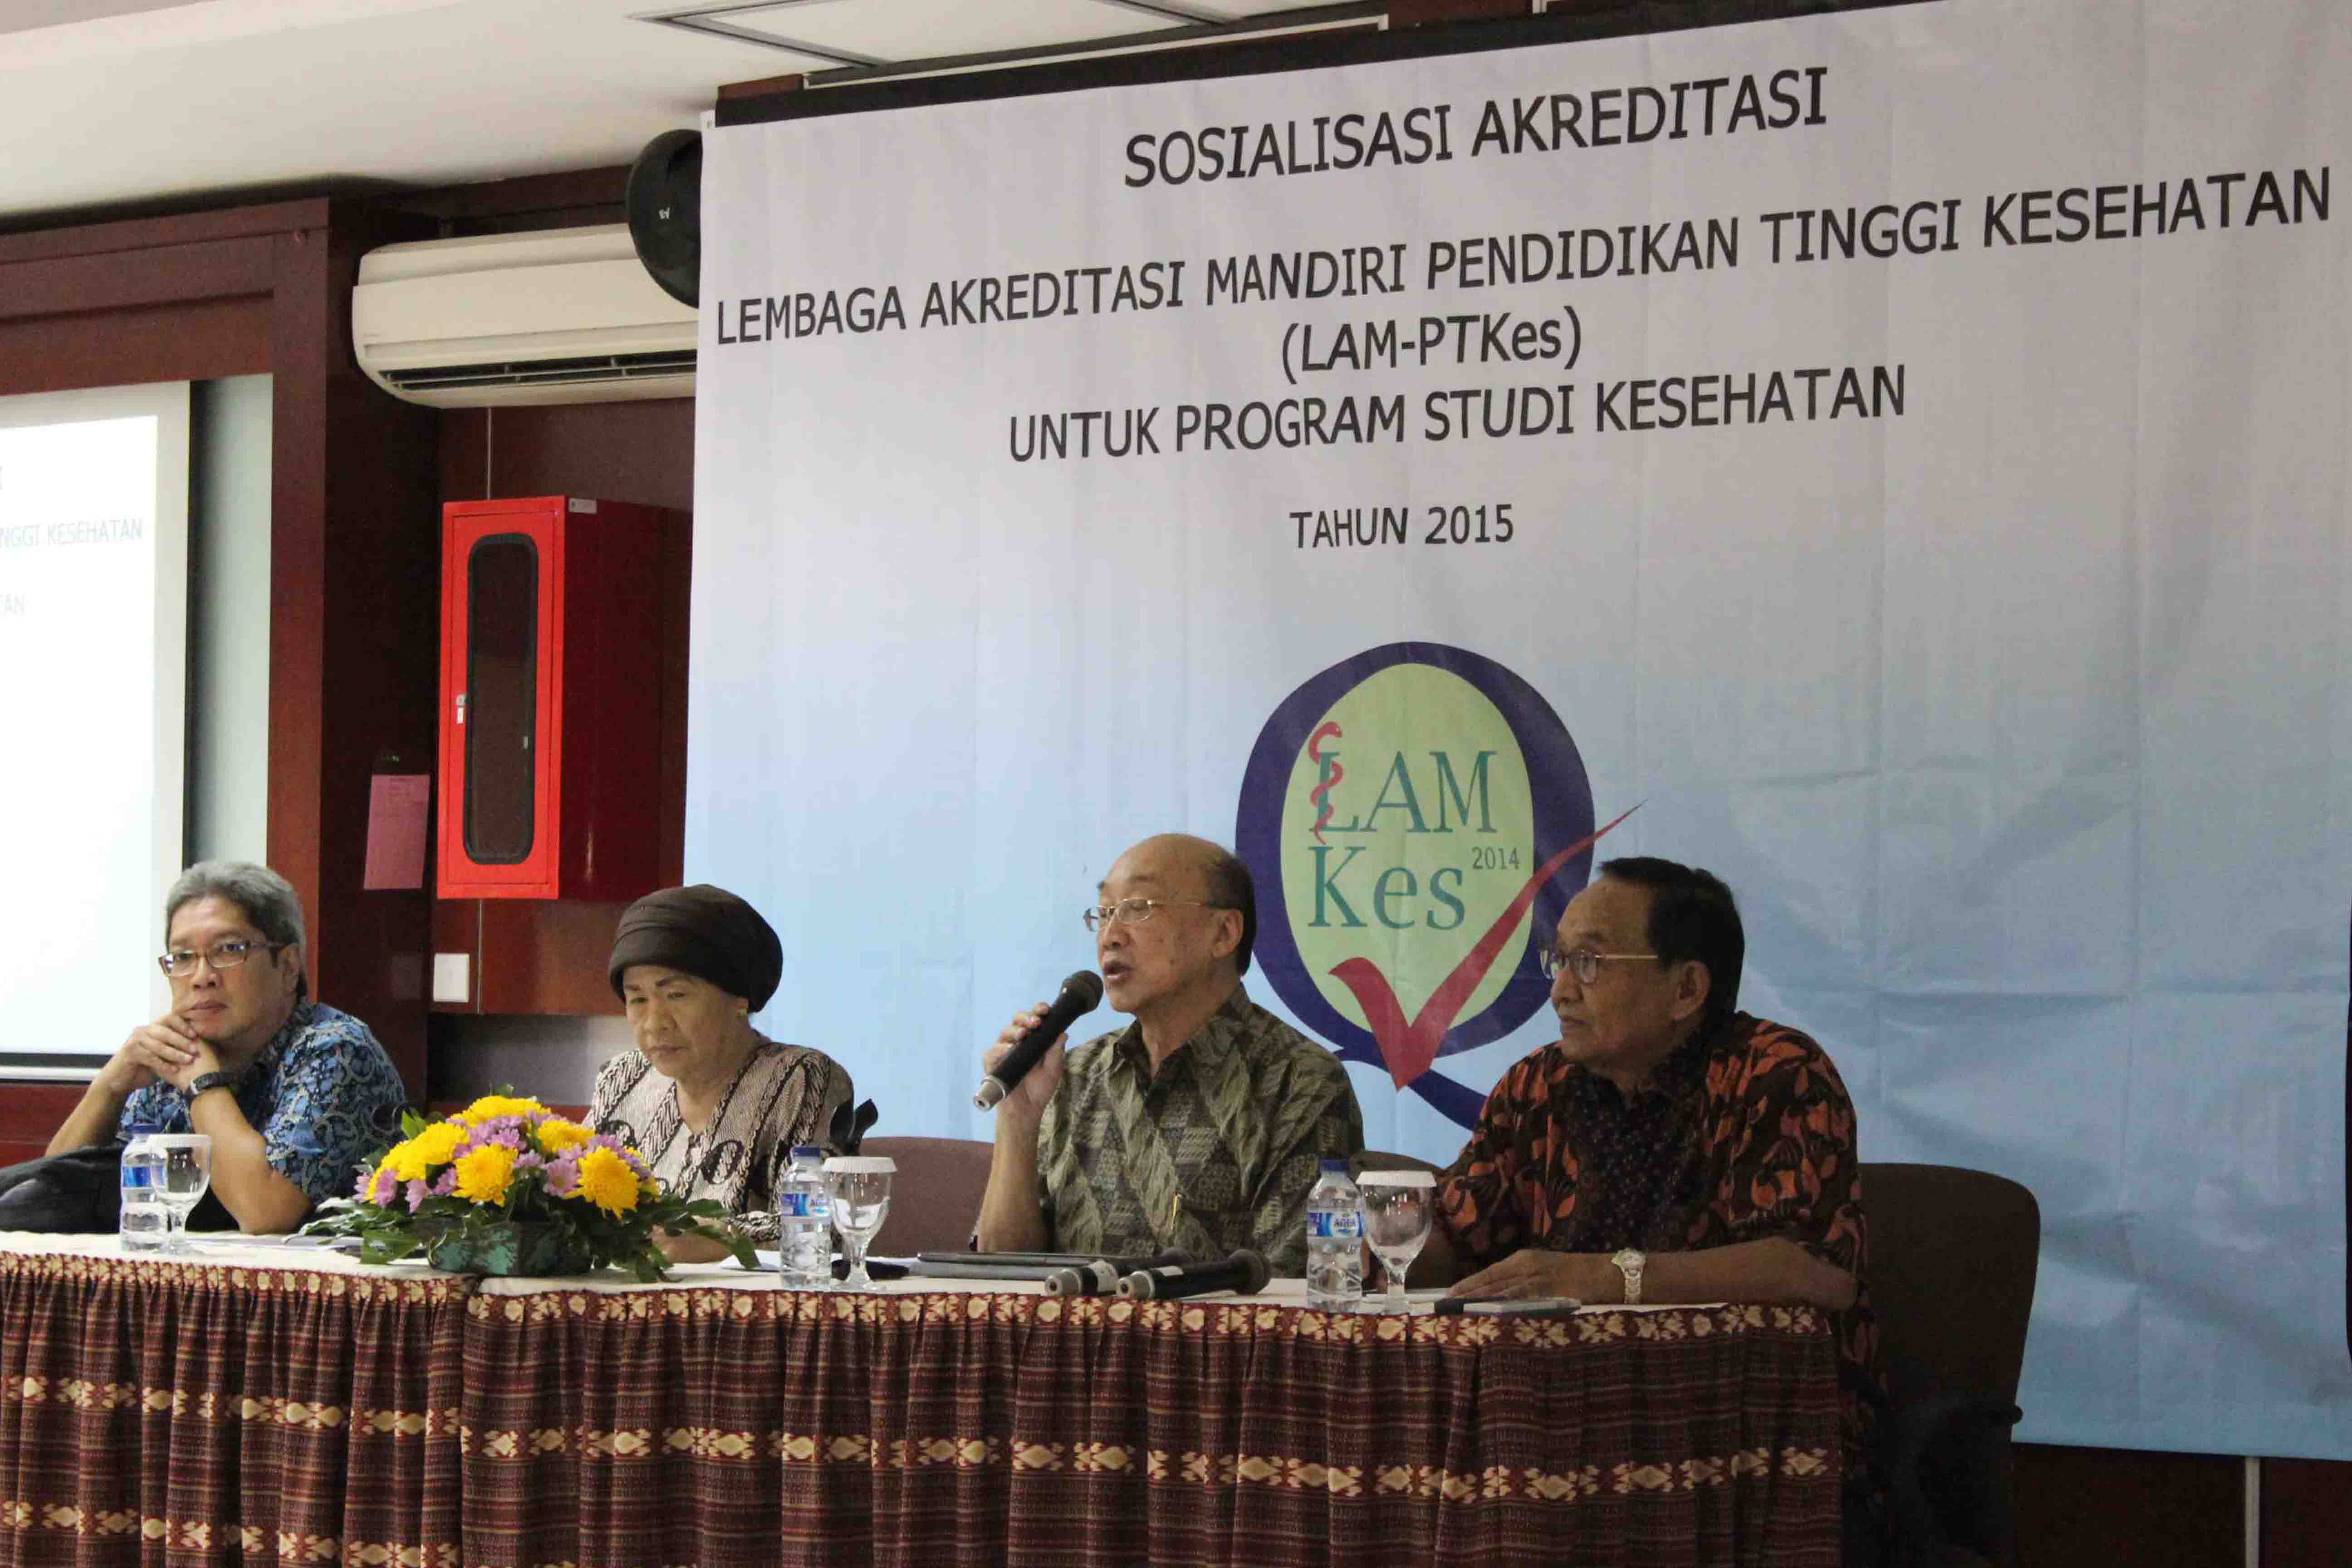 Sosialisasi LAM-PTKes 17-18 April 2015